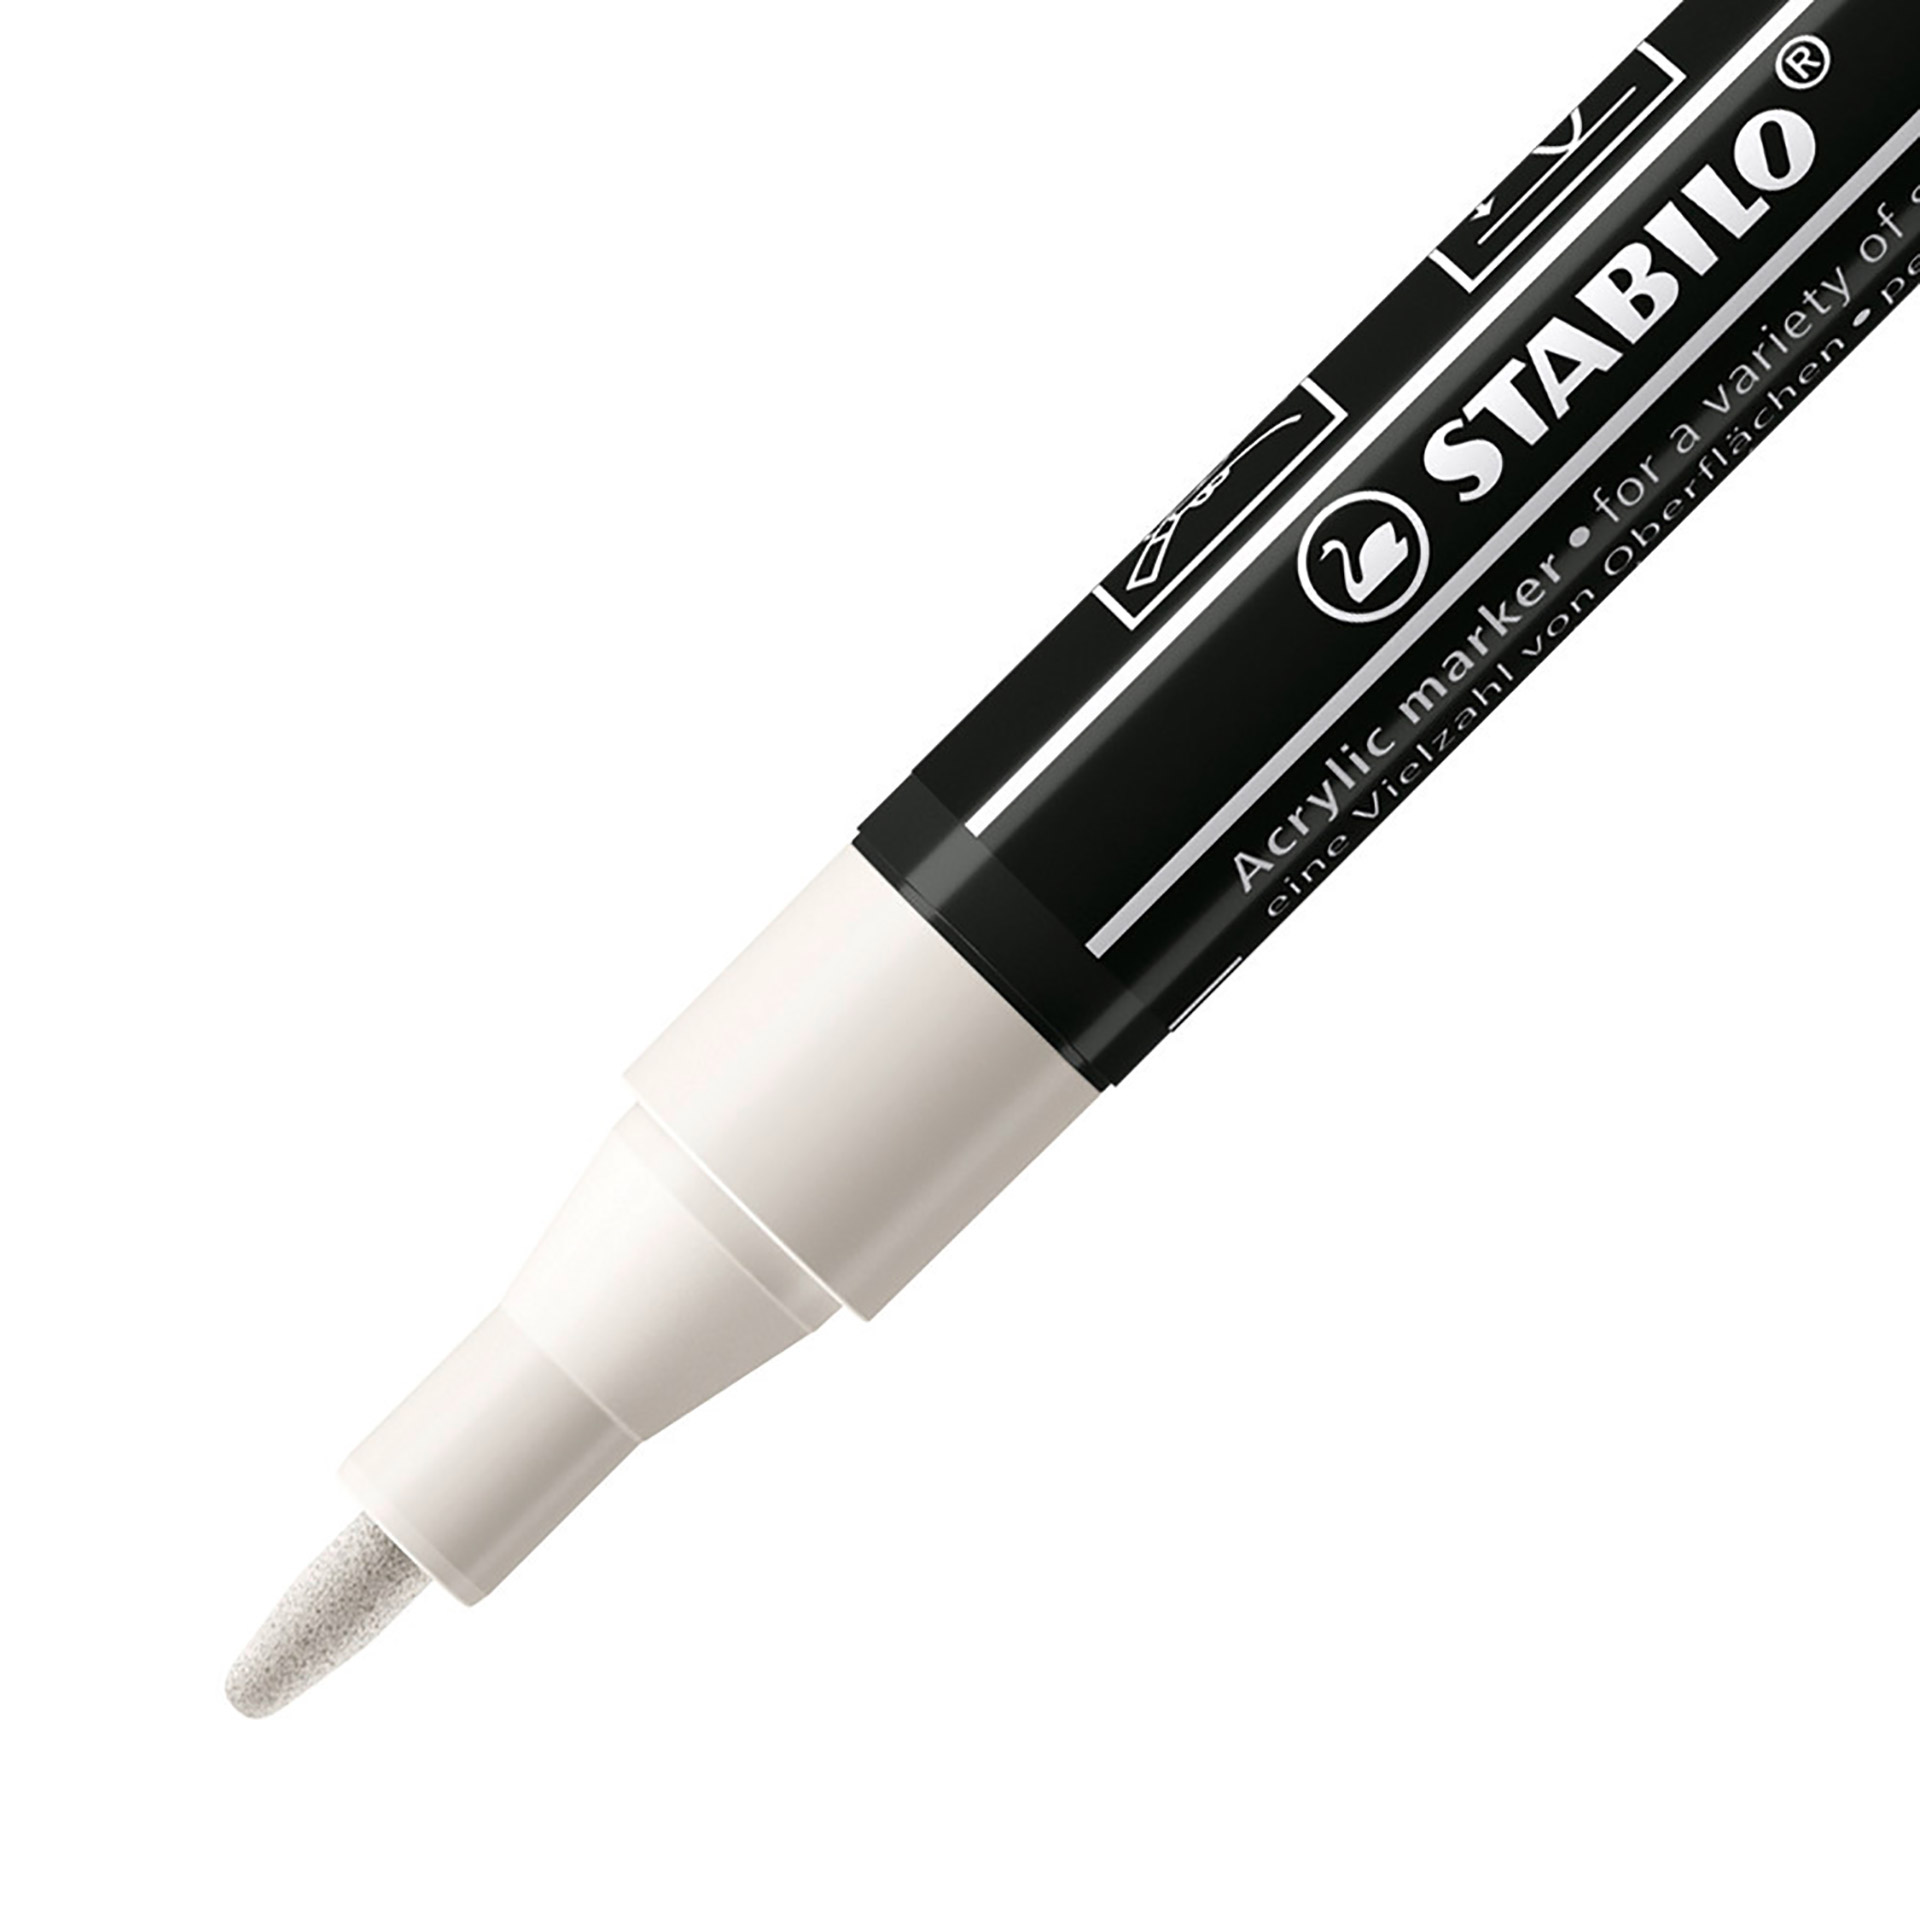 STABILO FREE Acrylic - T100 Punta rotonda 1-2mm - Confezione da 5 - Bianco, , large